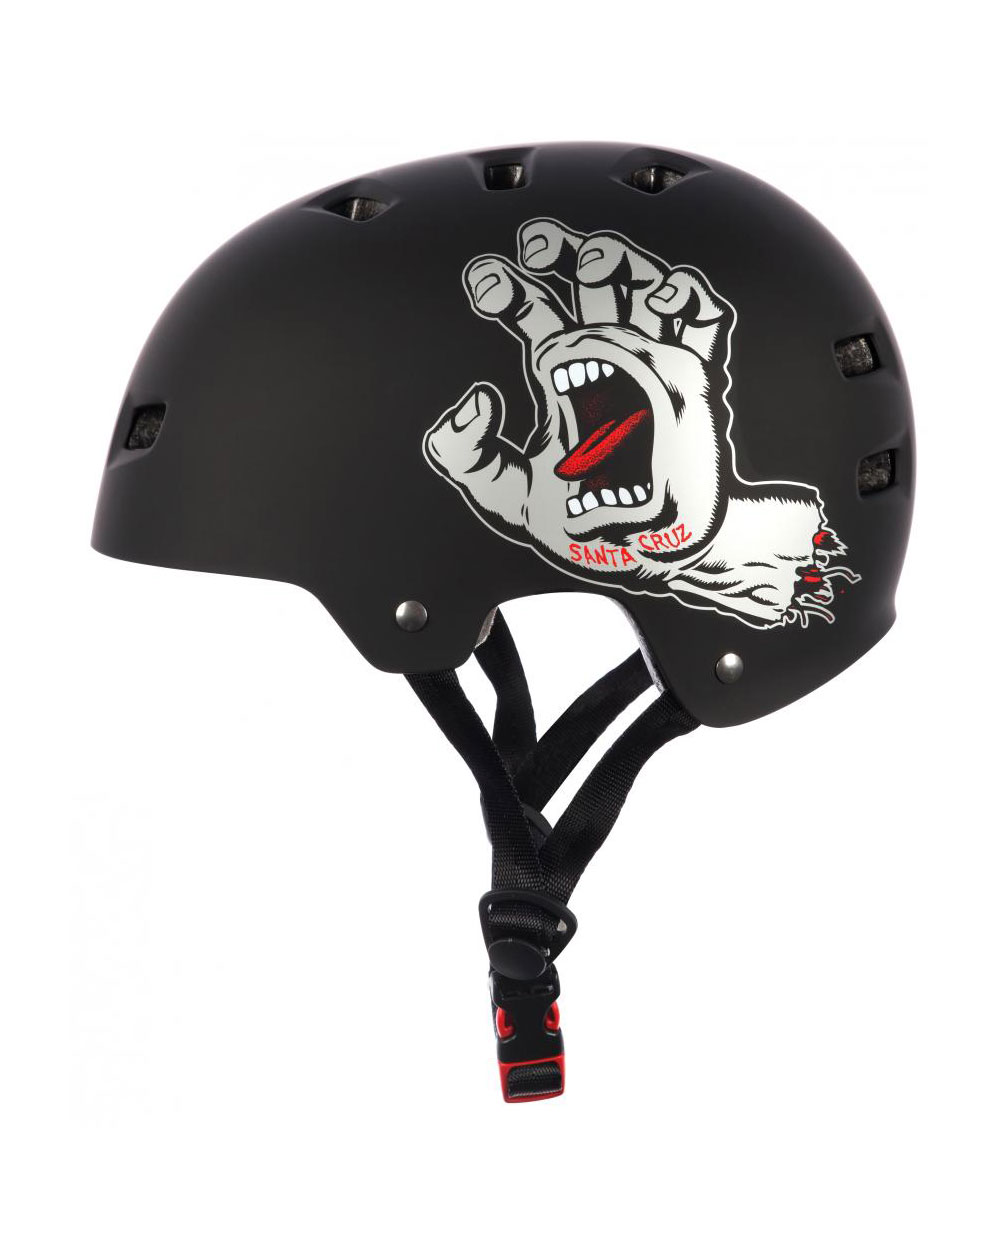 Bullet Safety Gear Bullet x Santa Cruz Screaming Hand Skateboard Helmet Matt Black